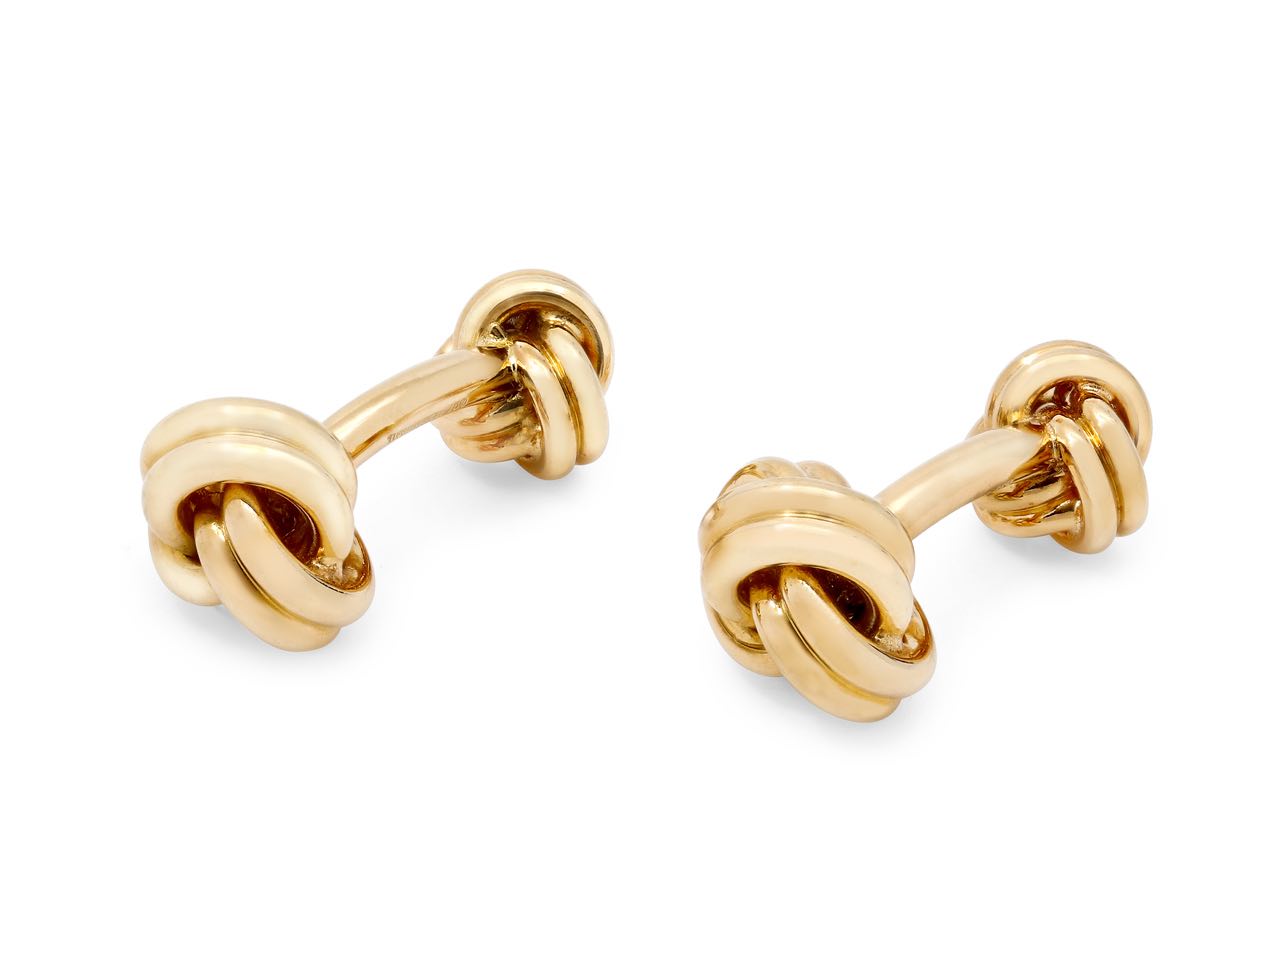 Tiffany & Co. Knot Cufflinks in 18K Gold